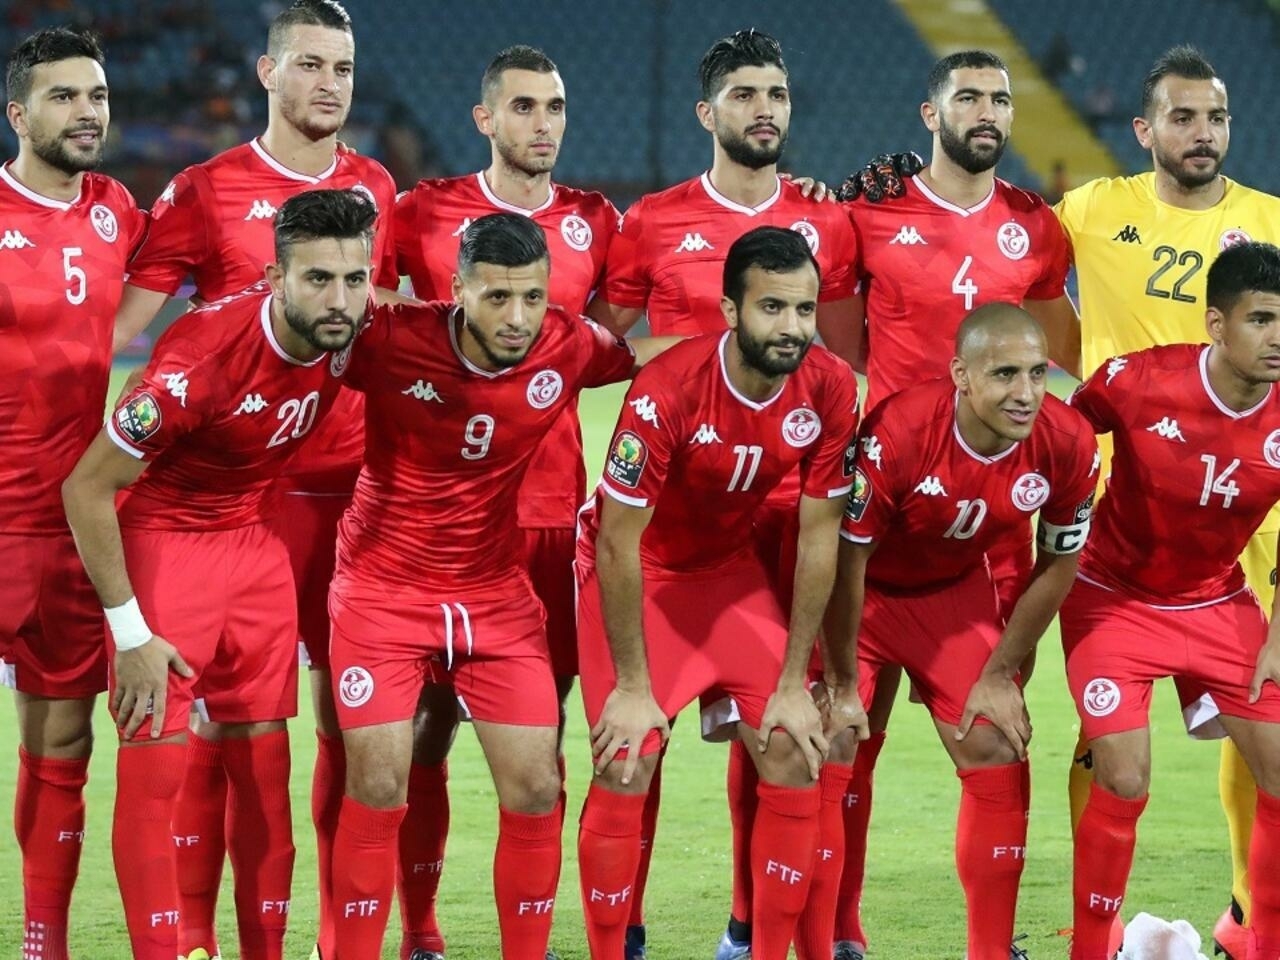 موعد مباراة تونس والامارات اليوم 6-12-2021 في الجولة الثالثة بـ كأس العرب و القنوات الناقلة والتشكيل